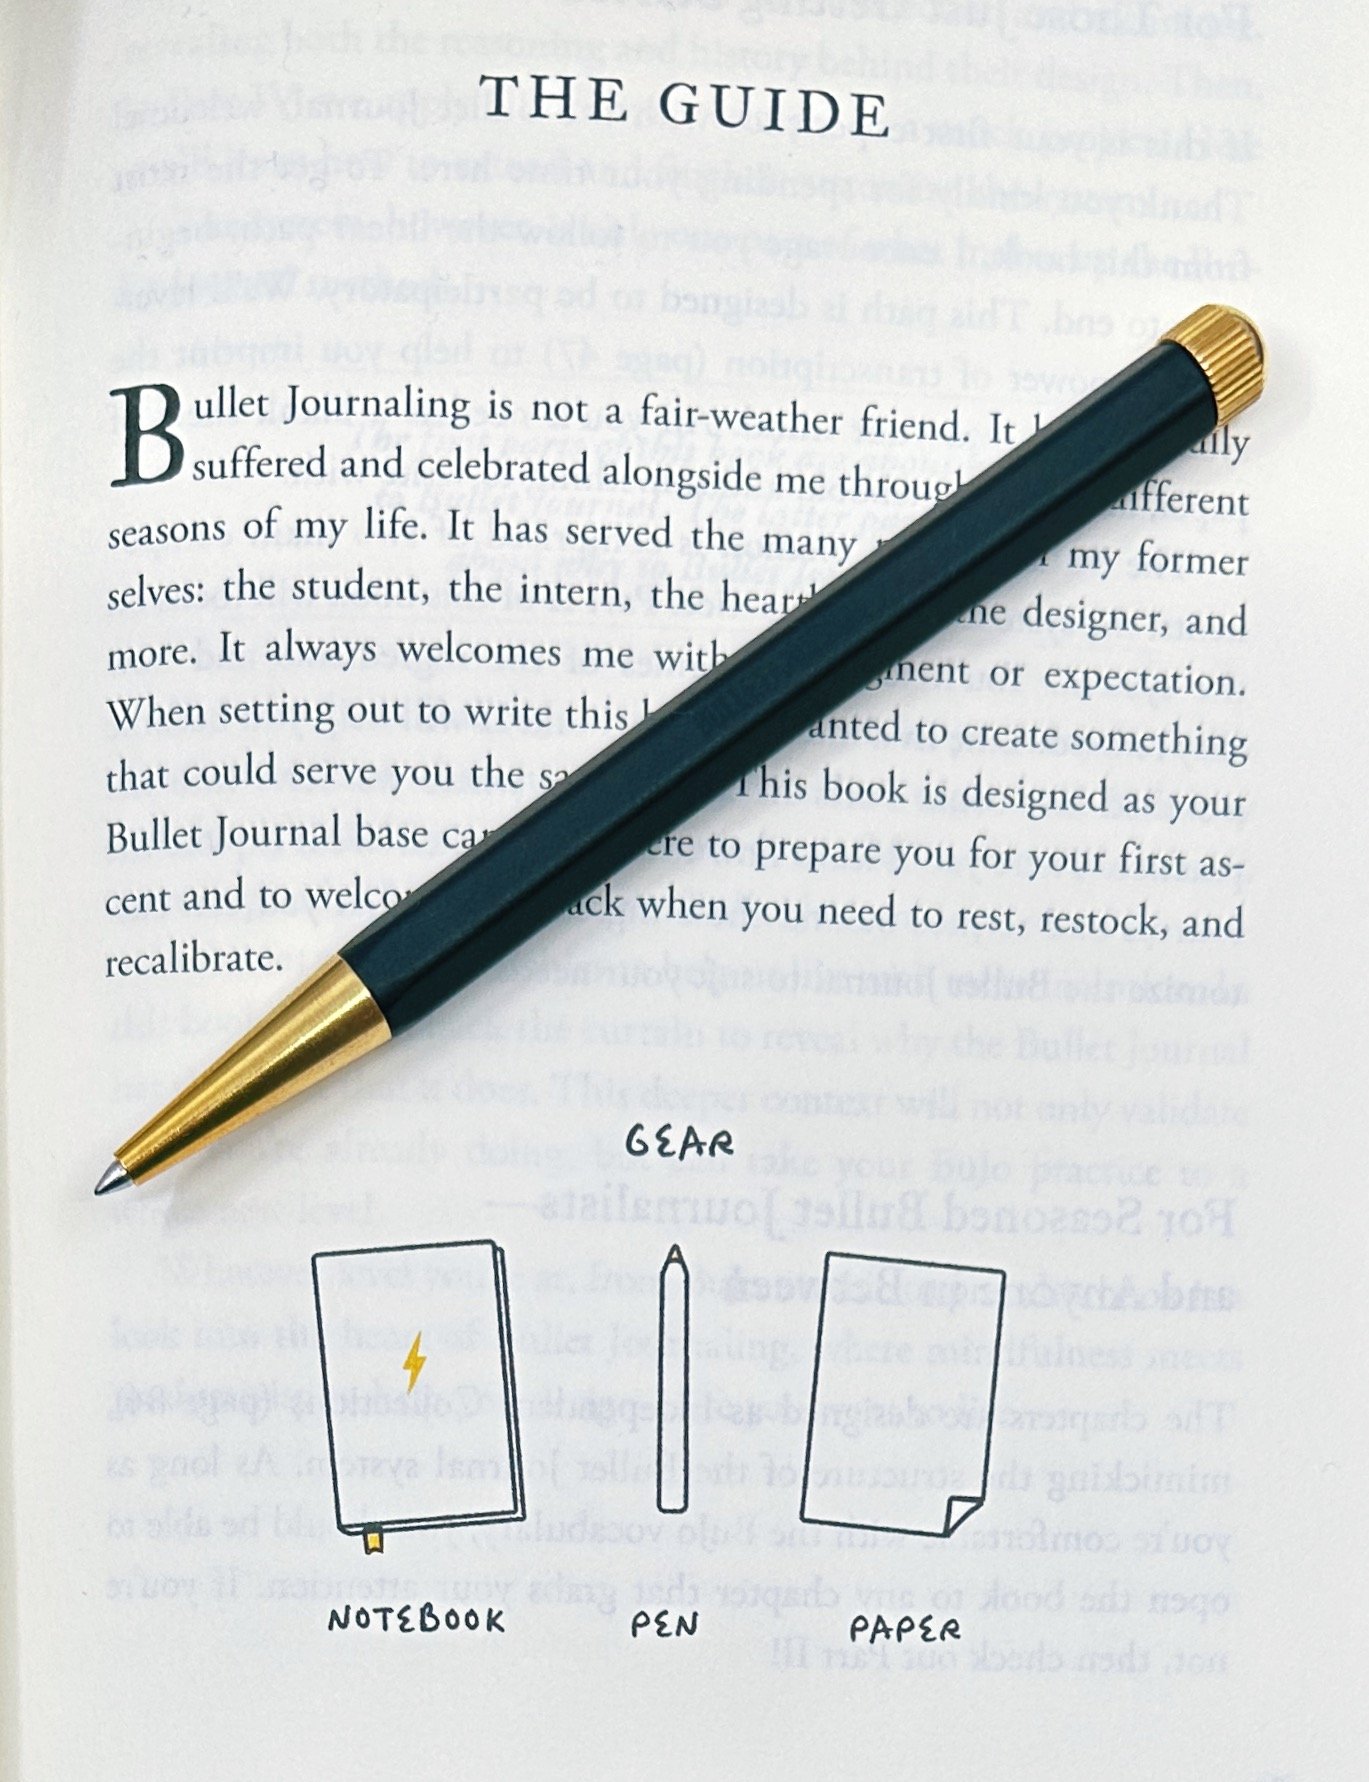 Bullet Journal Pens - Wellella - A Blog About Bullet Journaling